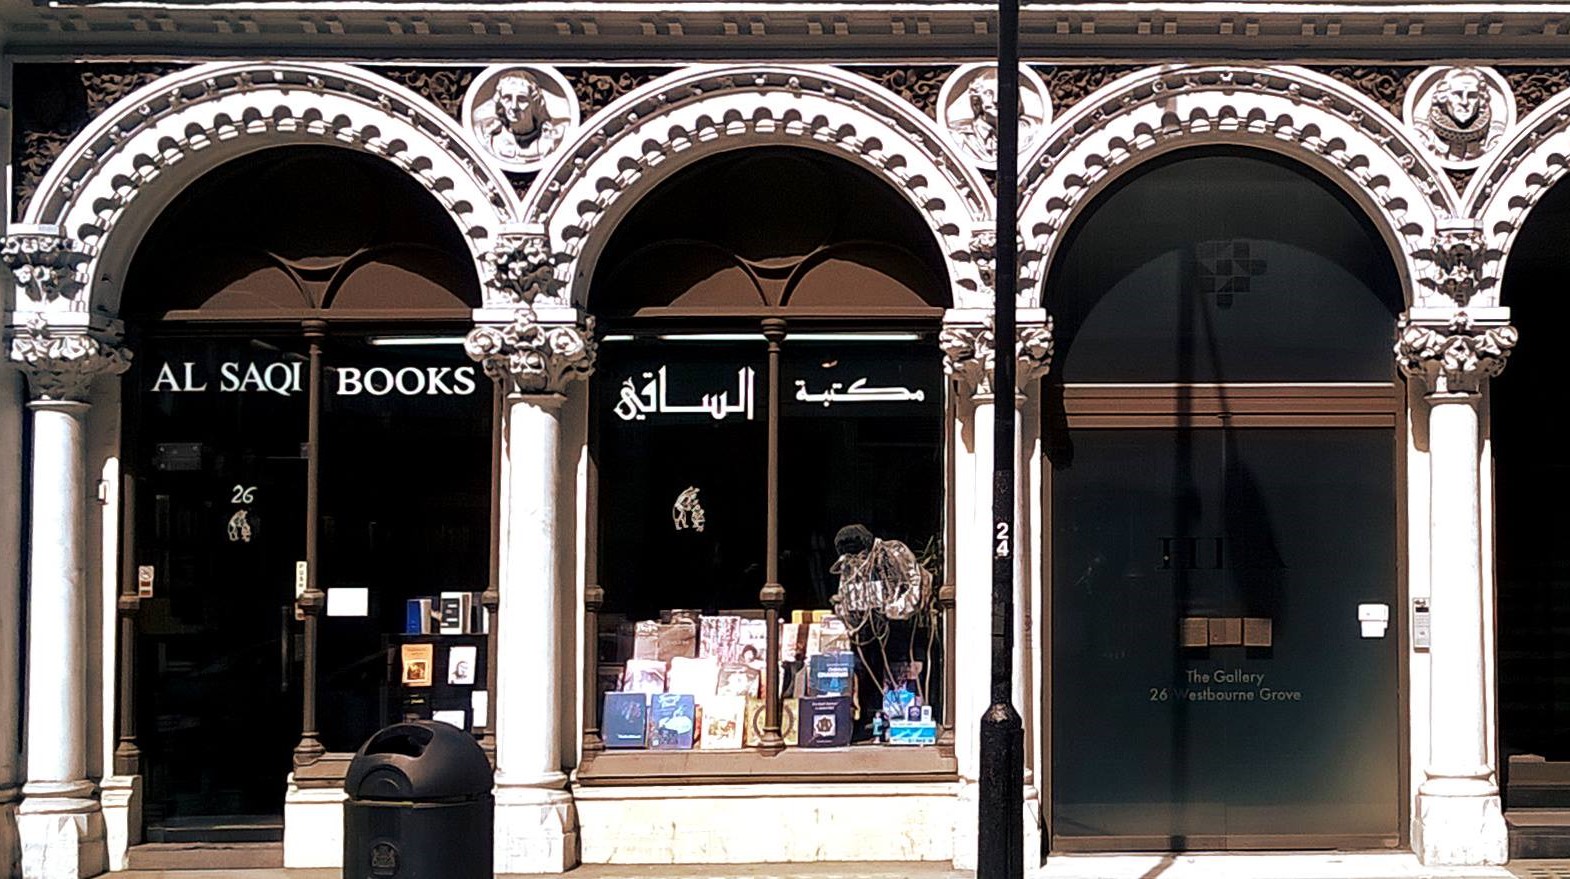 ظروف اقتصادية صعبة وراء قرار أكبر مكتبة عربية بلندن غلق أبوابها نهاية ديسمبر الحالي .